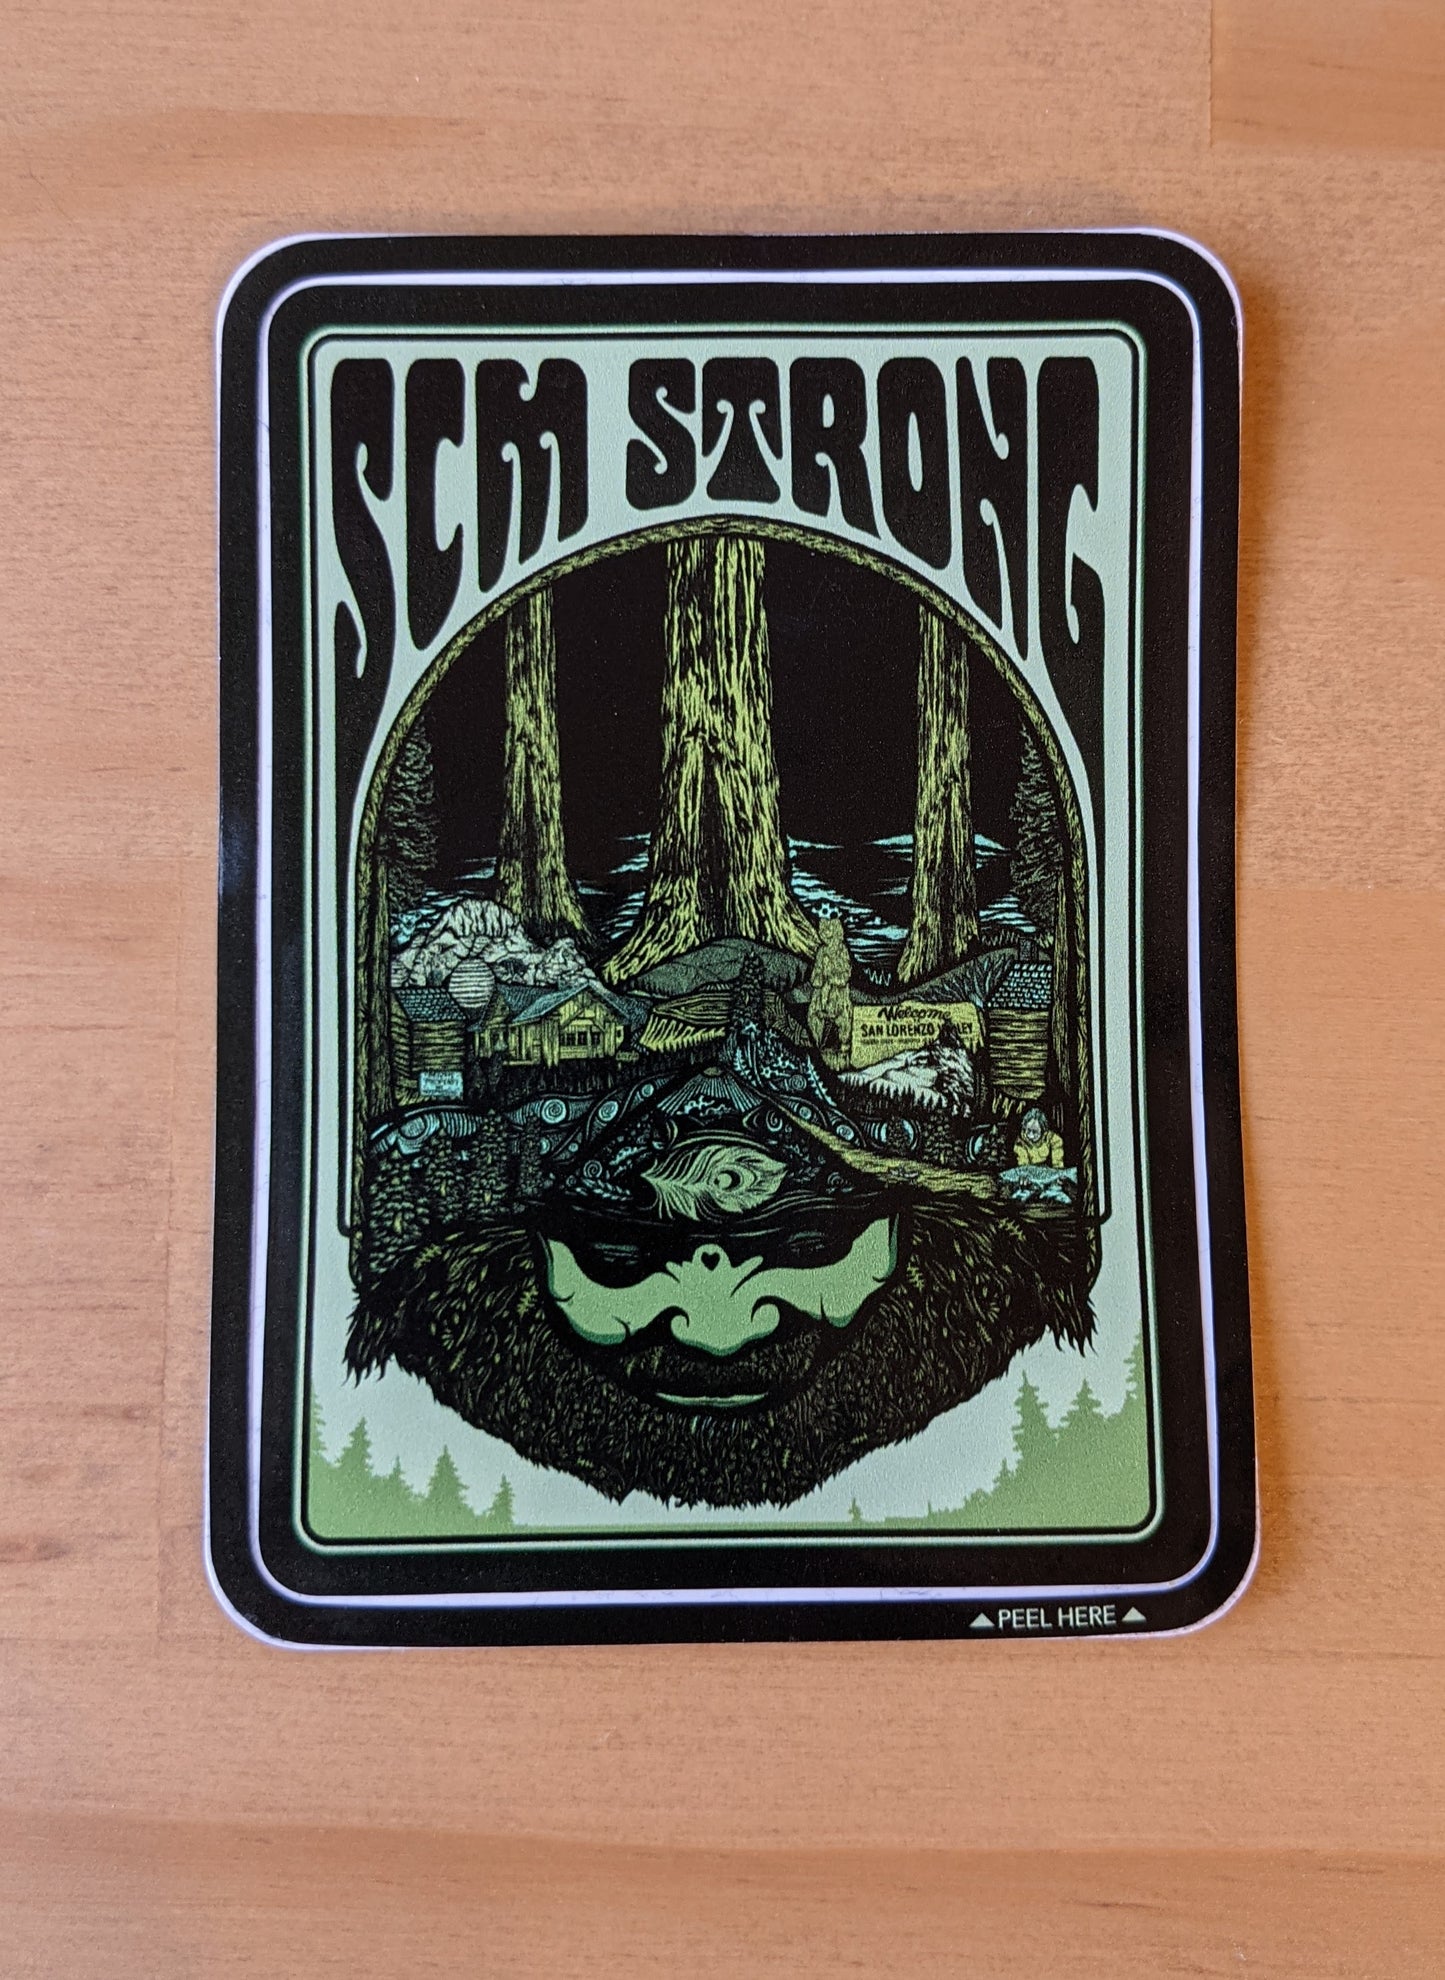 SCM Strong sticker by Nicky Gatson